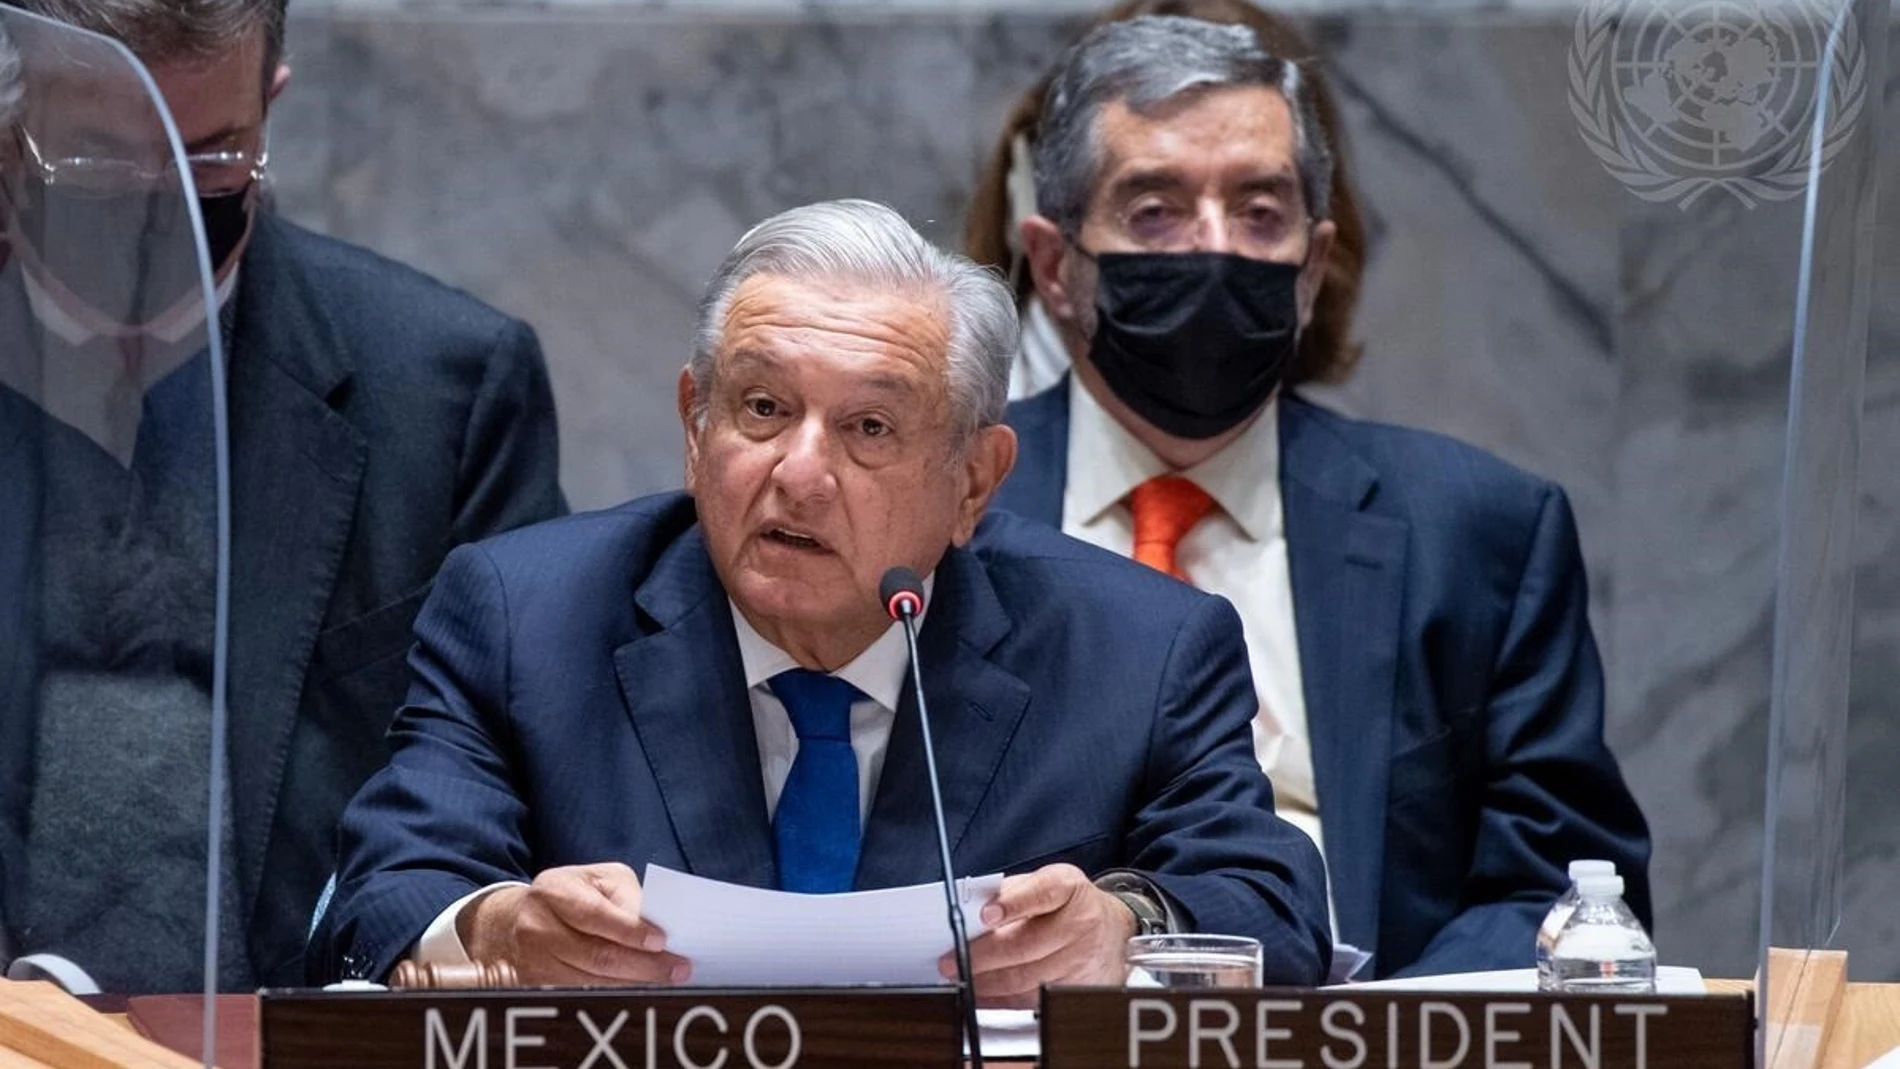 El presidente de México, Andrés Manuel López Obrador, durante una interveción ante el Consejo de Seguridad de Naciones UnidasUN PHOTO/ESKINDER DEBEBE09/11/2021